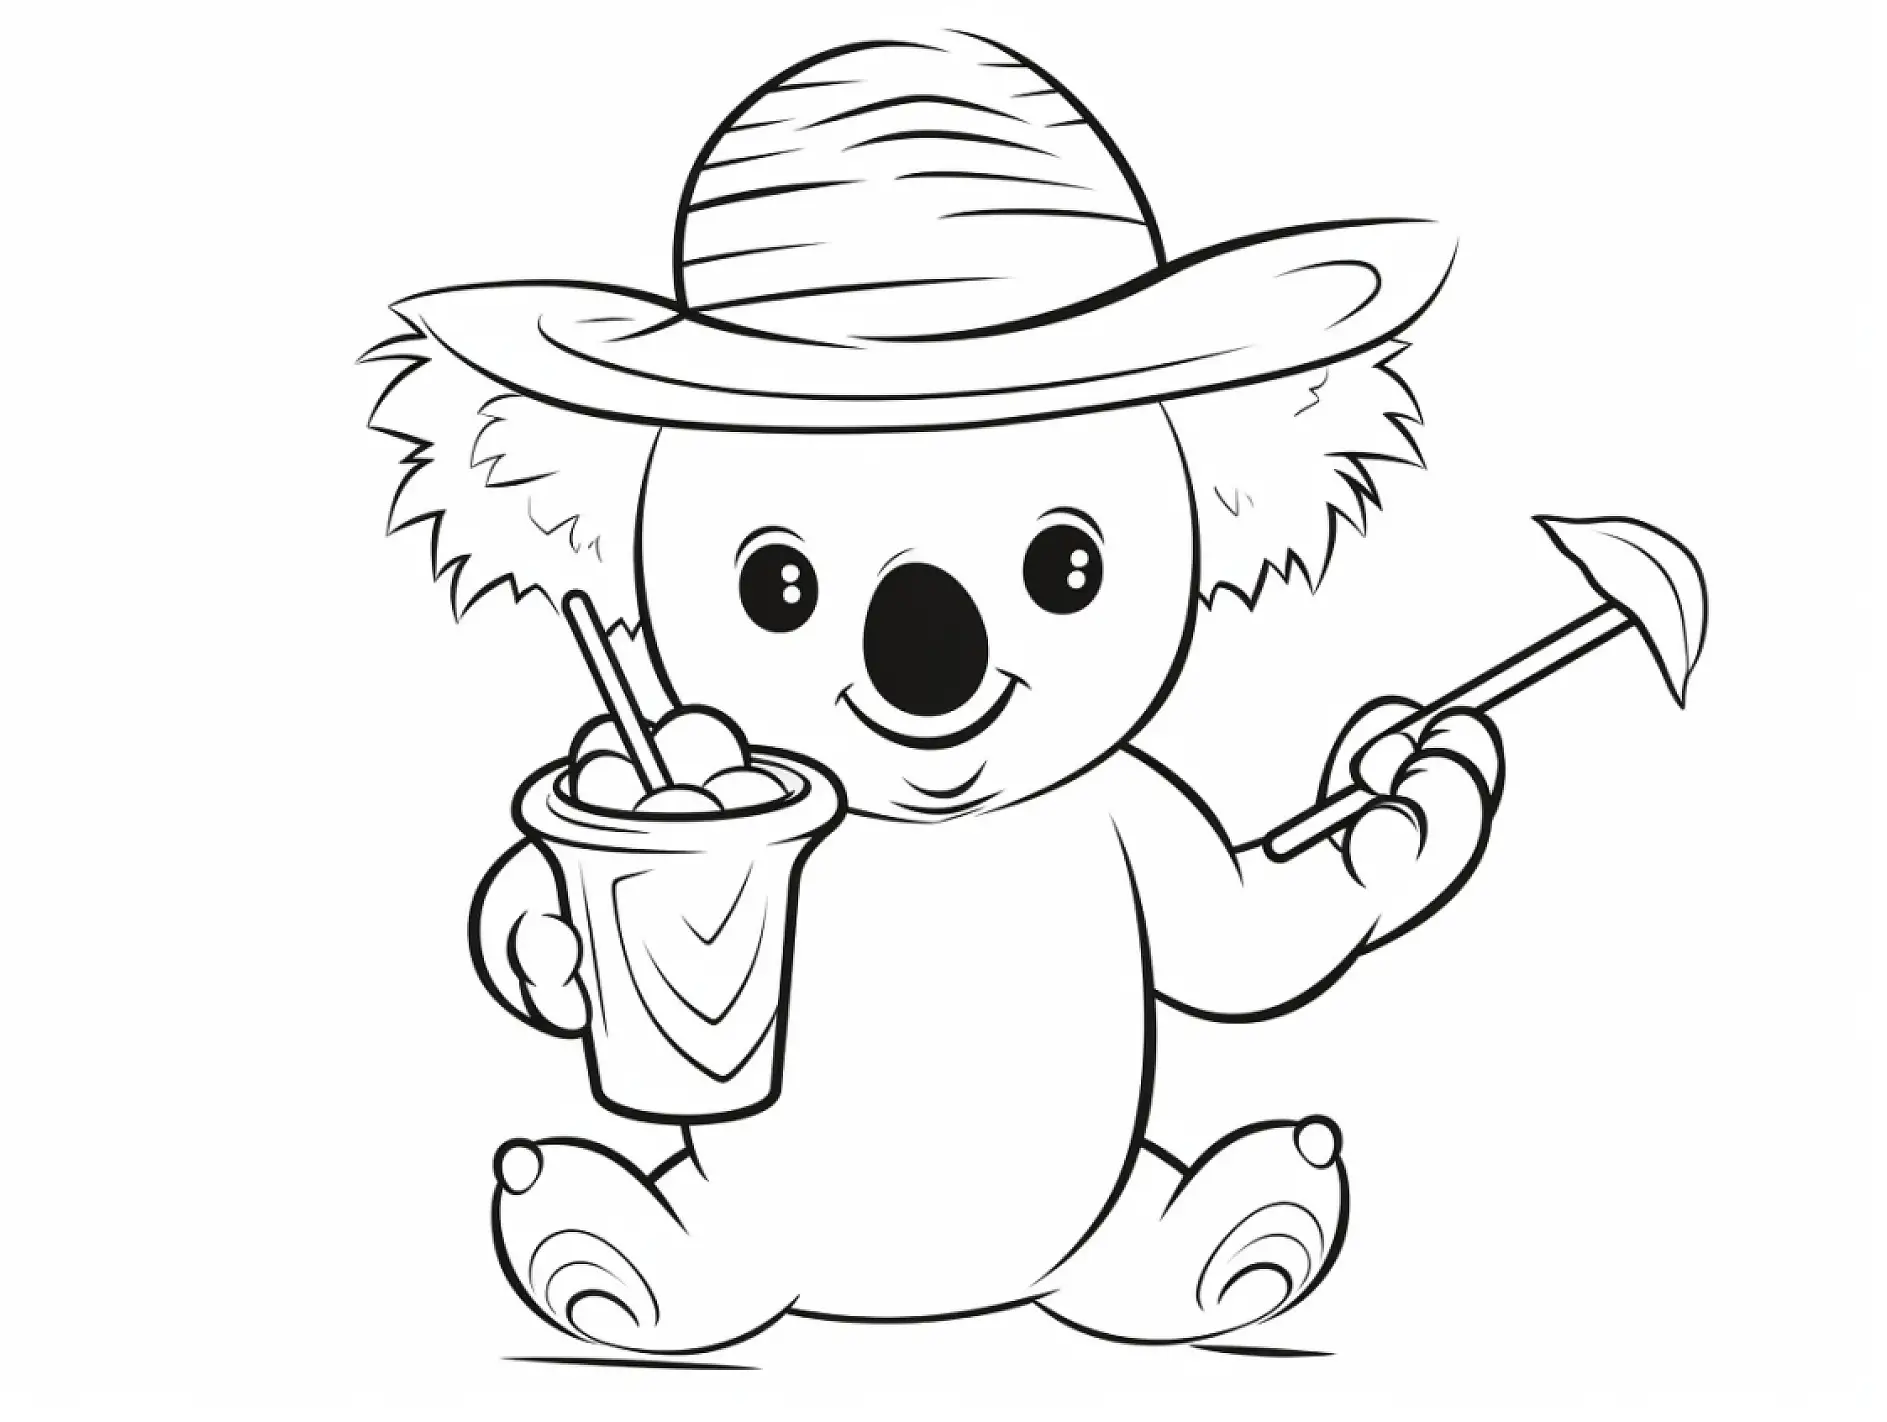 Ausmalbild Koala mit Hut hält Getränk und Schaufel